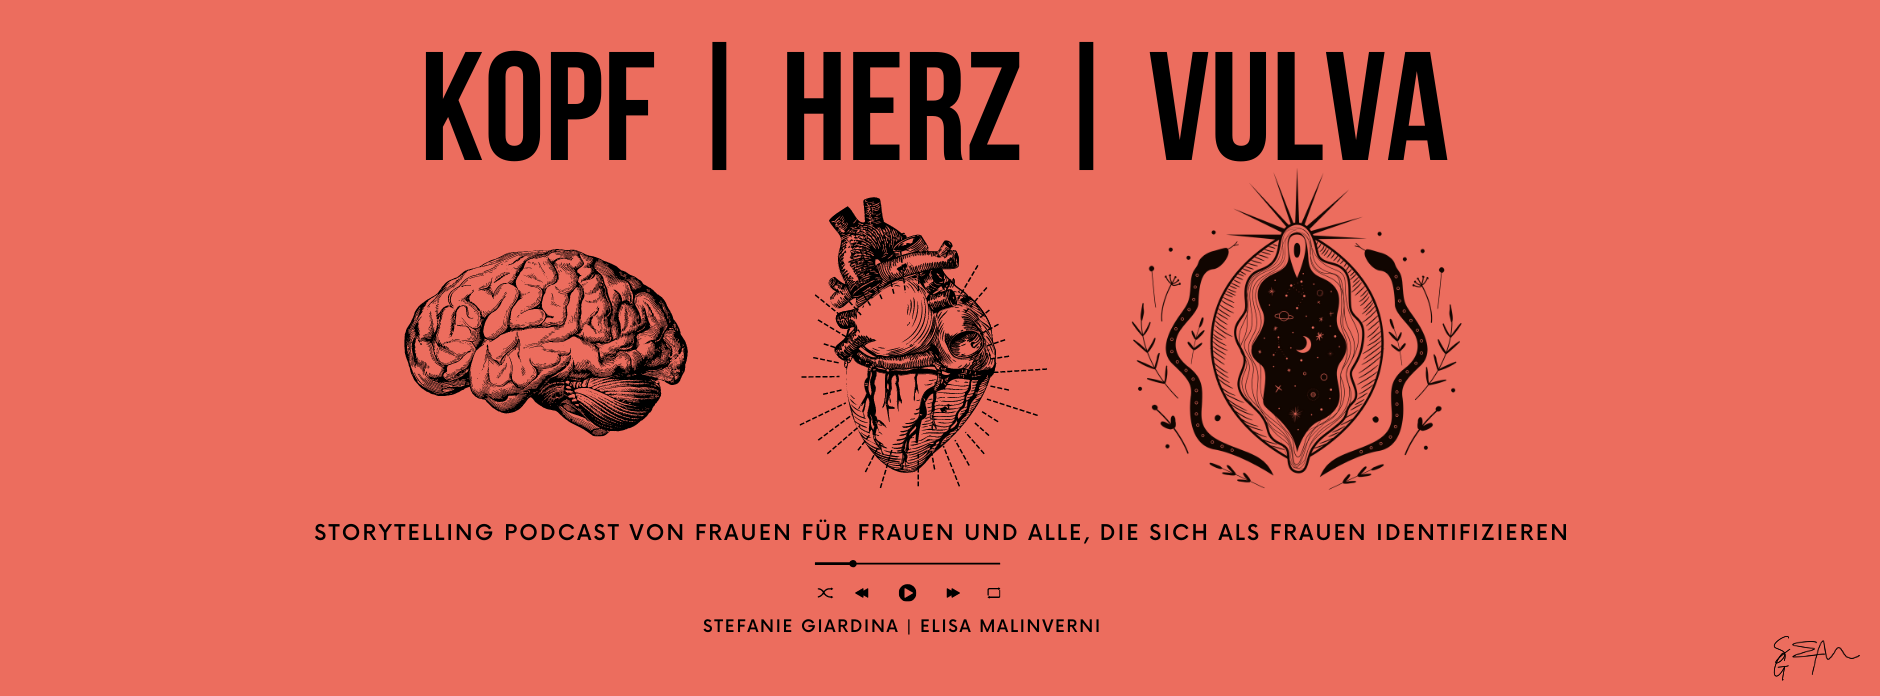 FB-Cover-Image-Kopf-Herz-Vulva